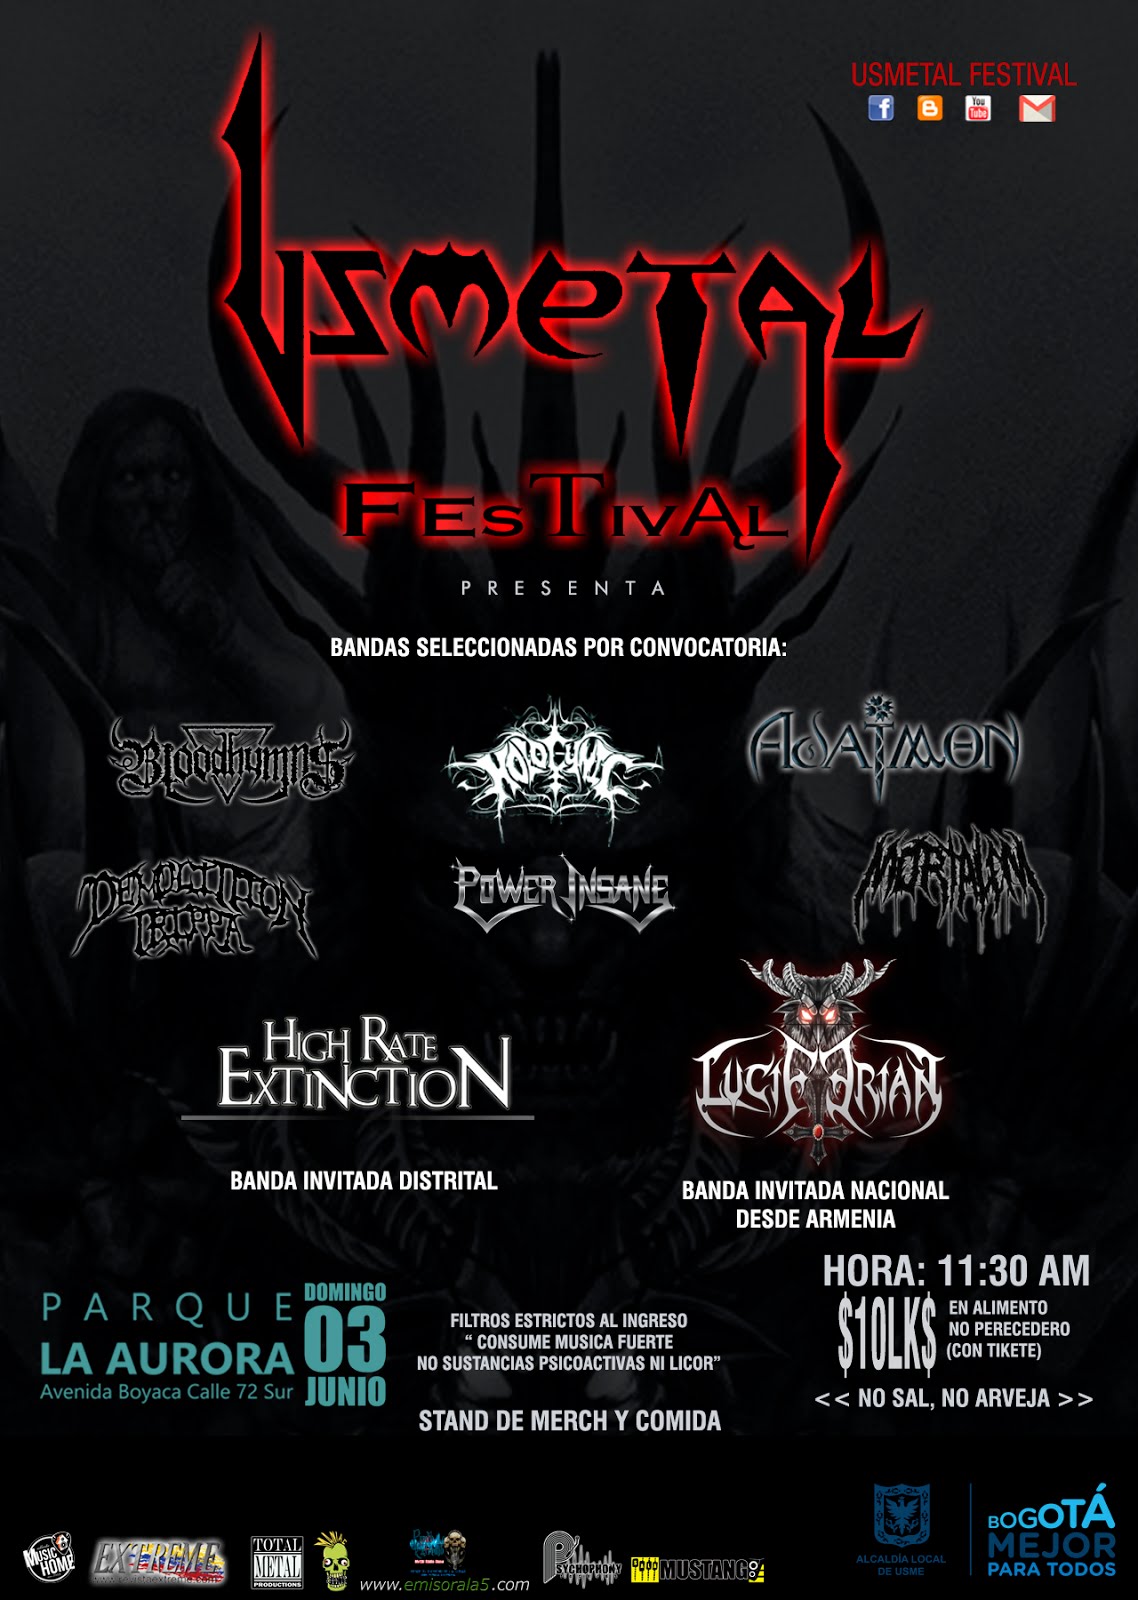 Usmetal Festival 2018